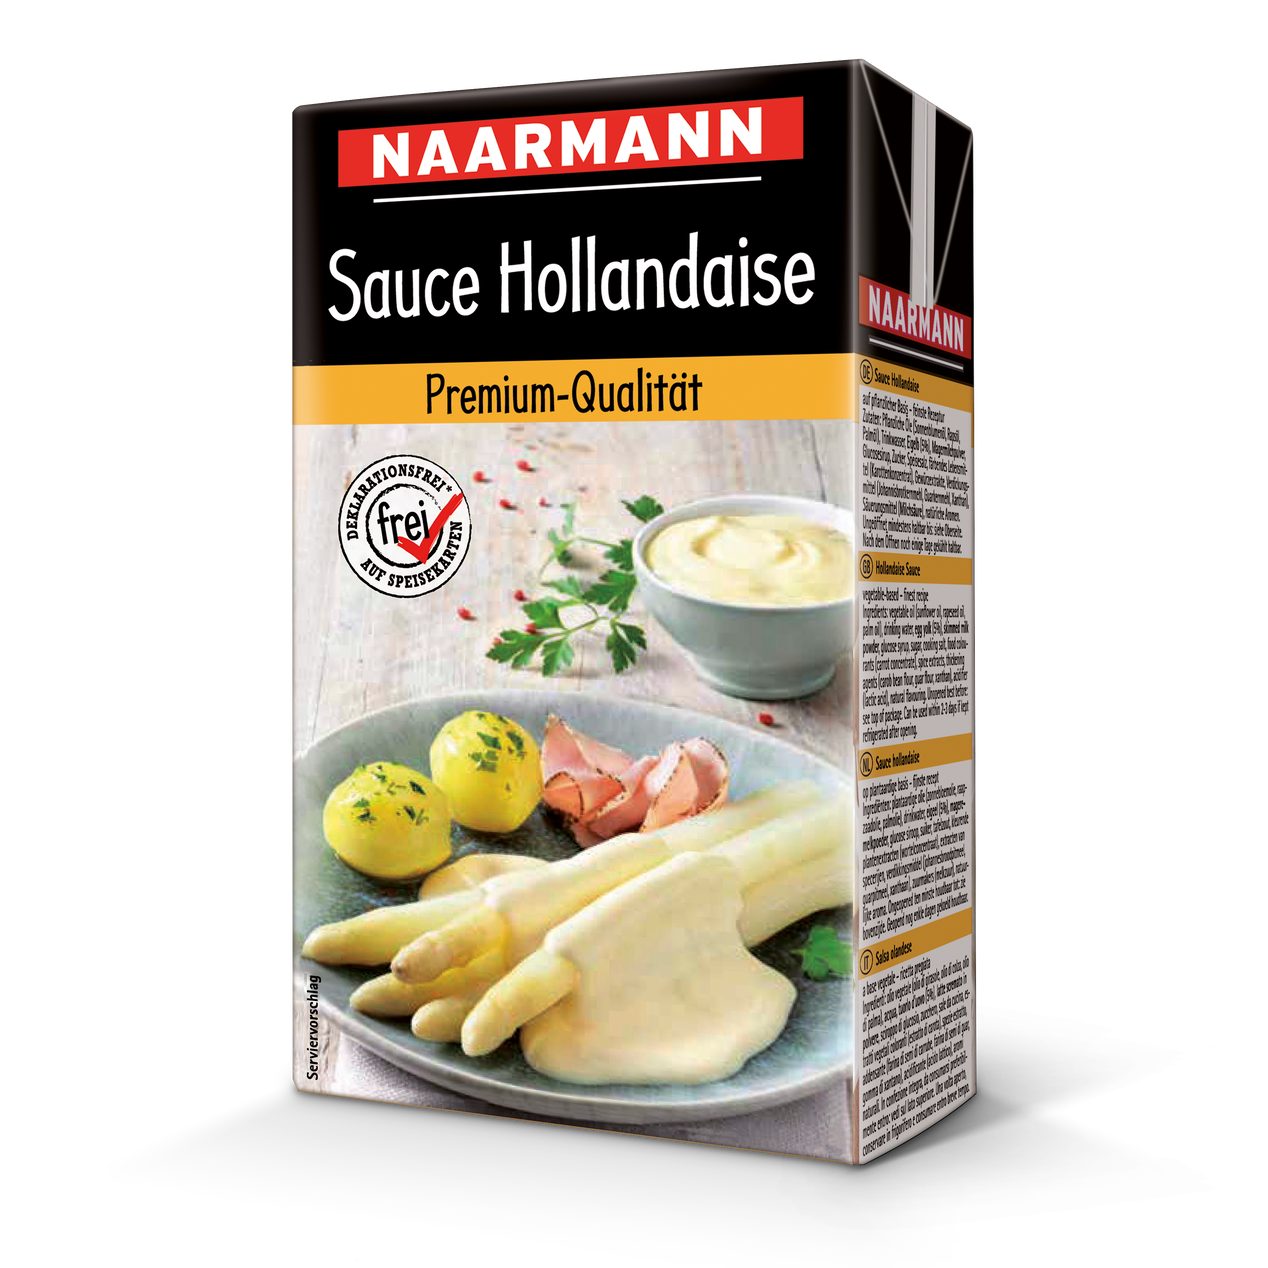 NAARMANN Hollandaise sauce